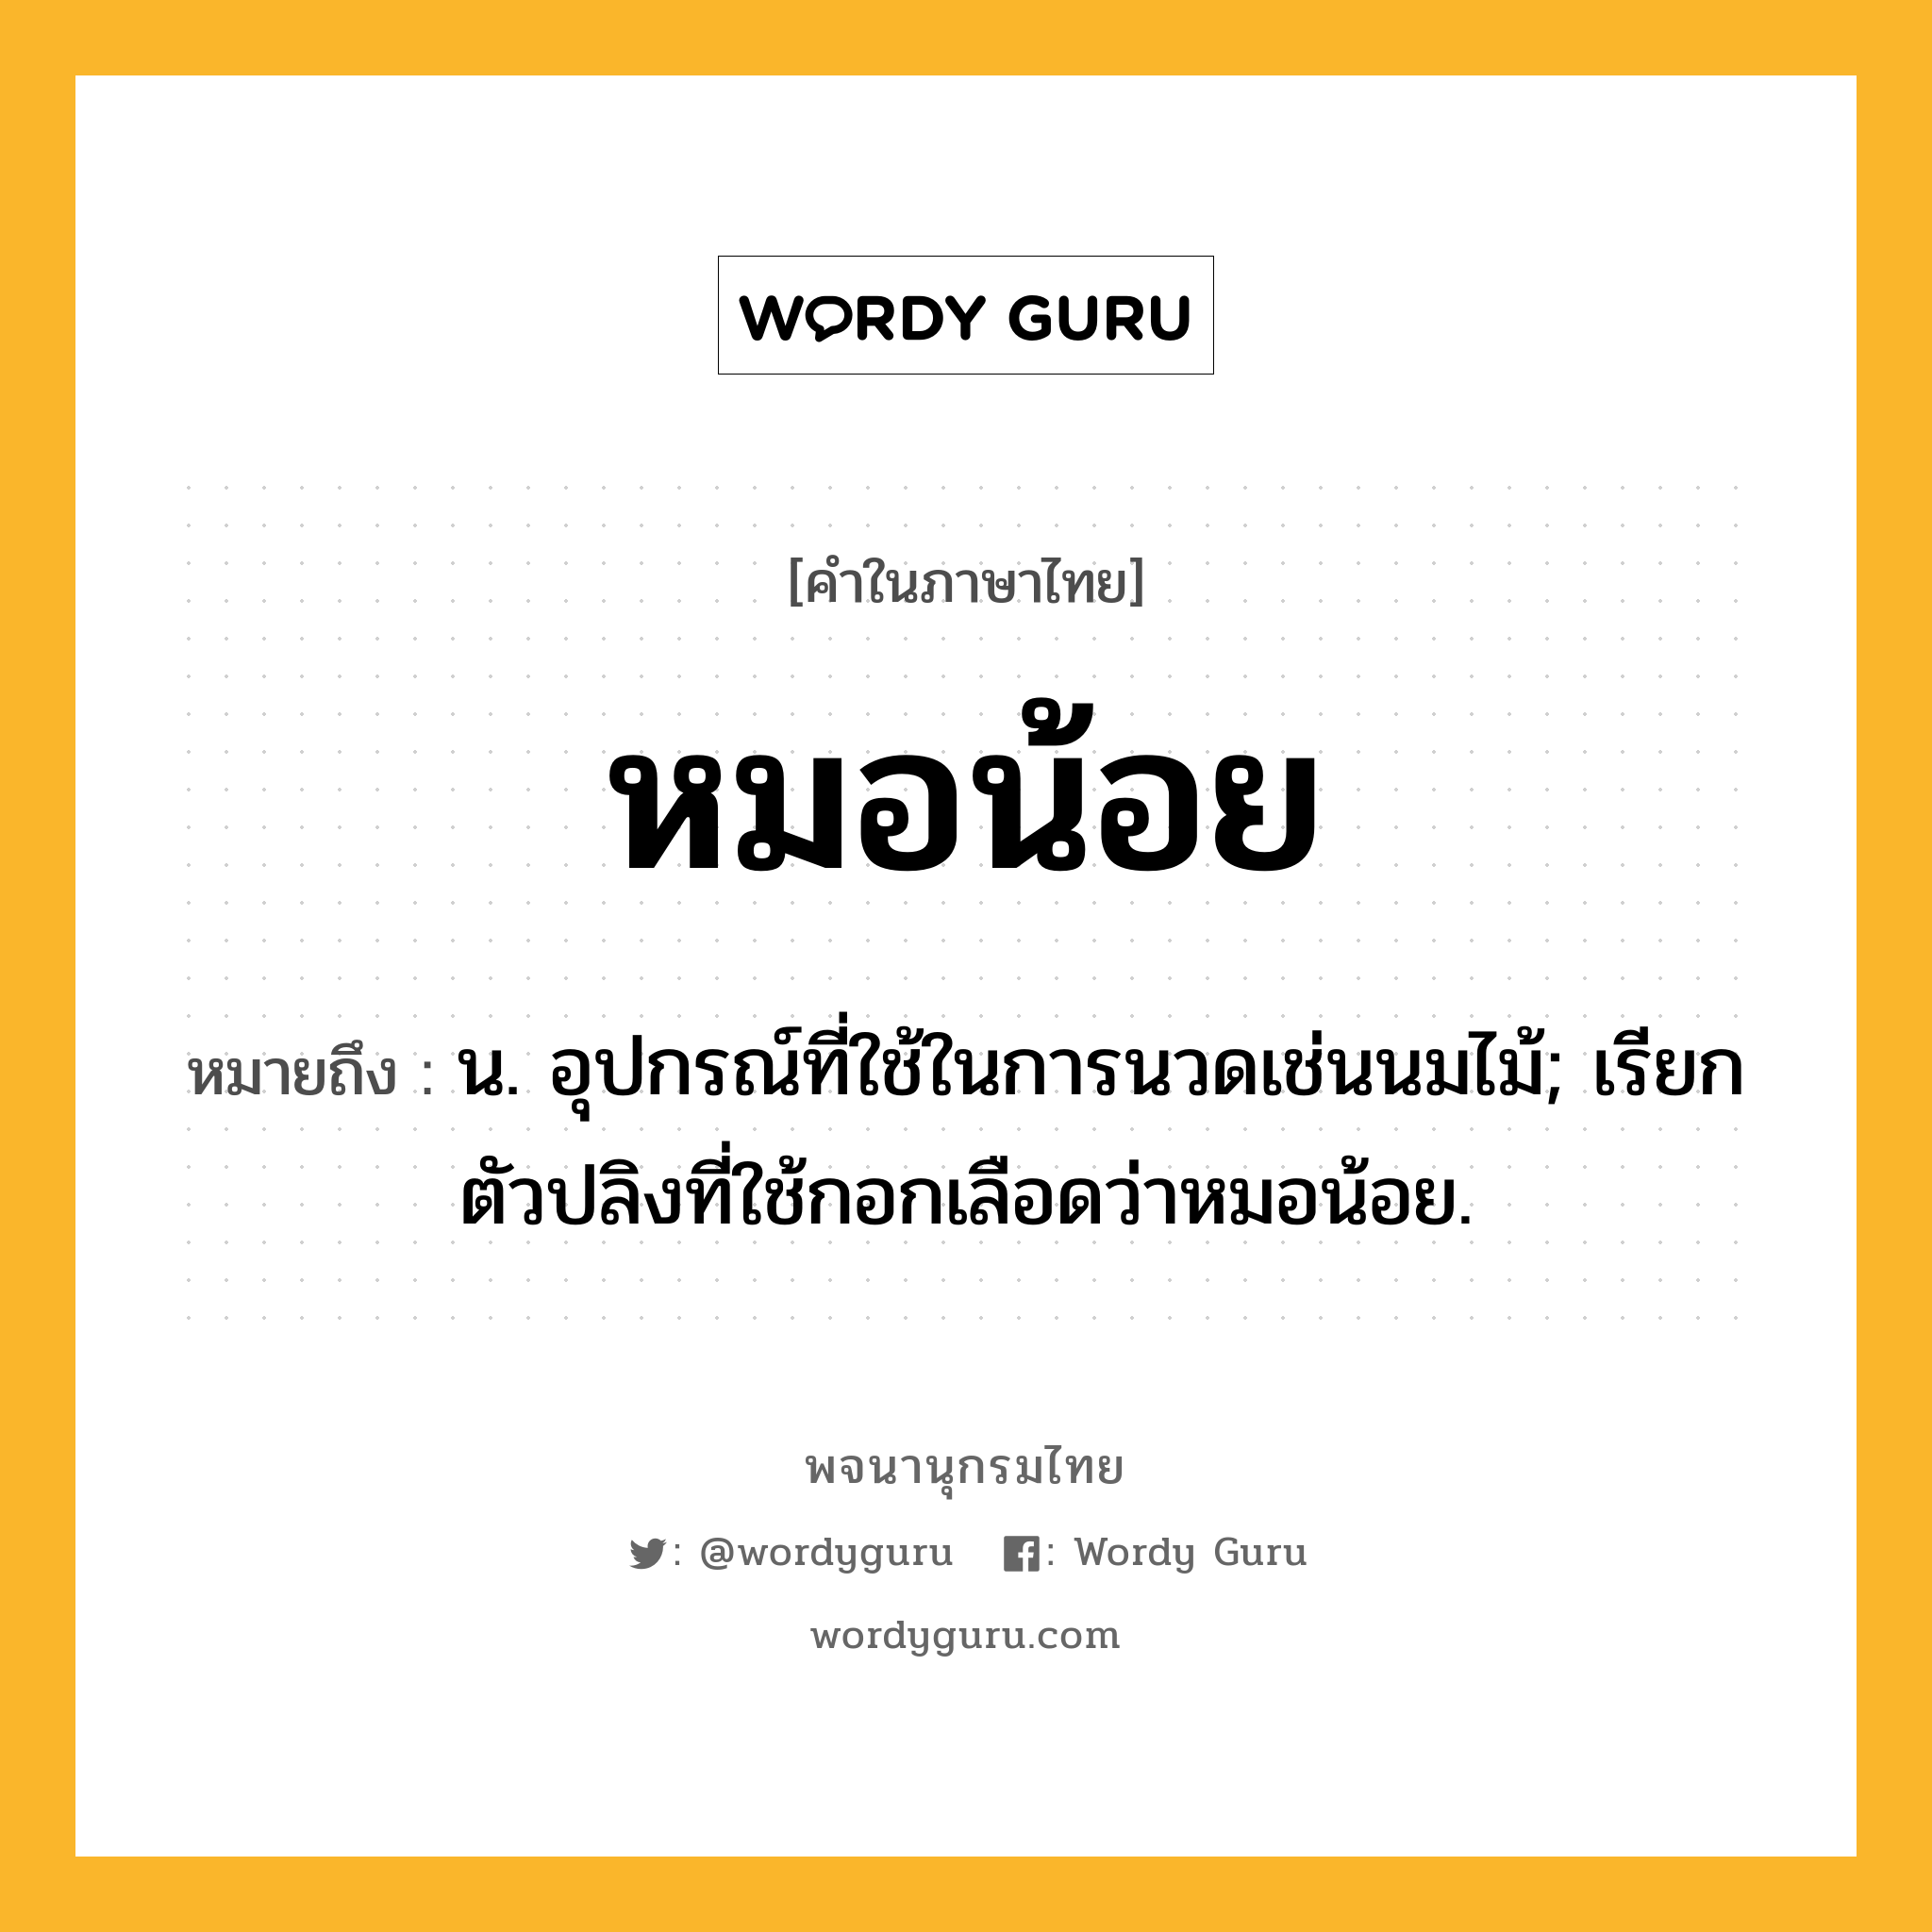 หมอน้อย หมายถึงอะไร?, คำในภาษาไทย หมอน้อย หมายถึง น. อุปกรณ์ที่ใช้ในการนวดเช่นนมไม้; เรียกตัวปลิงที่ใช้กอกเลือดว่าหมอน้อย.